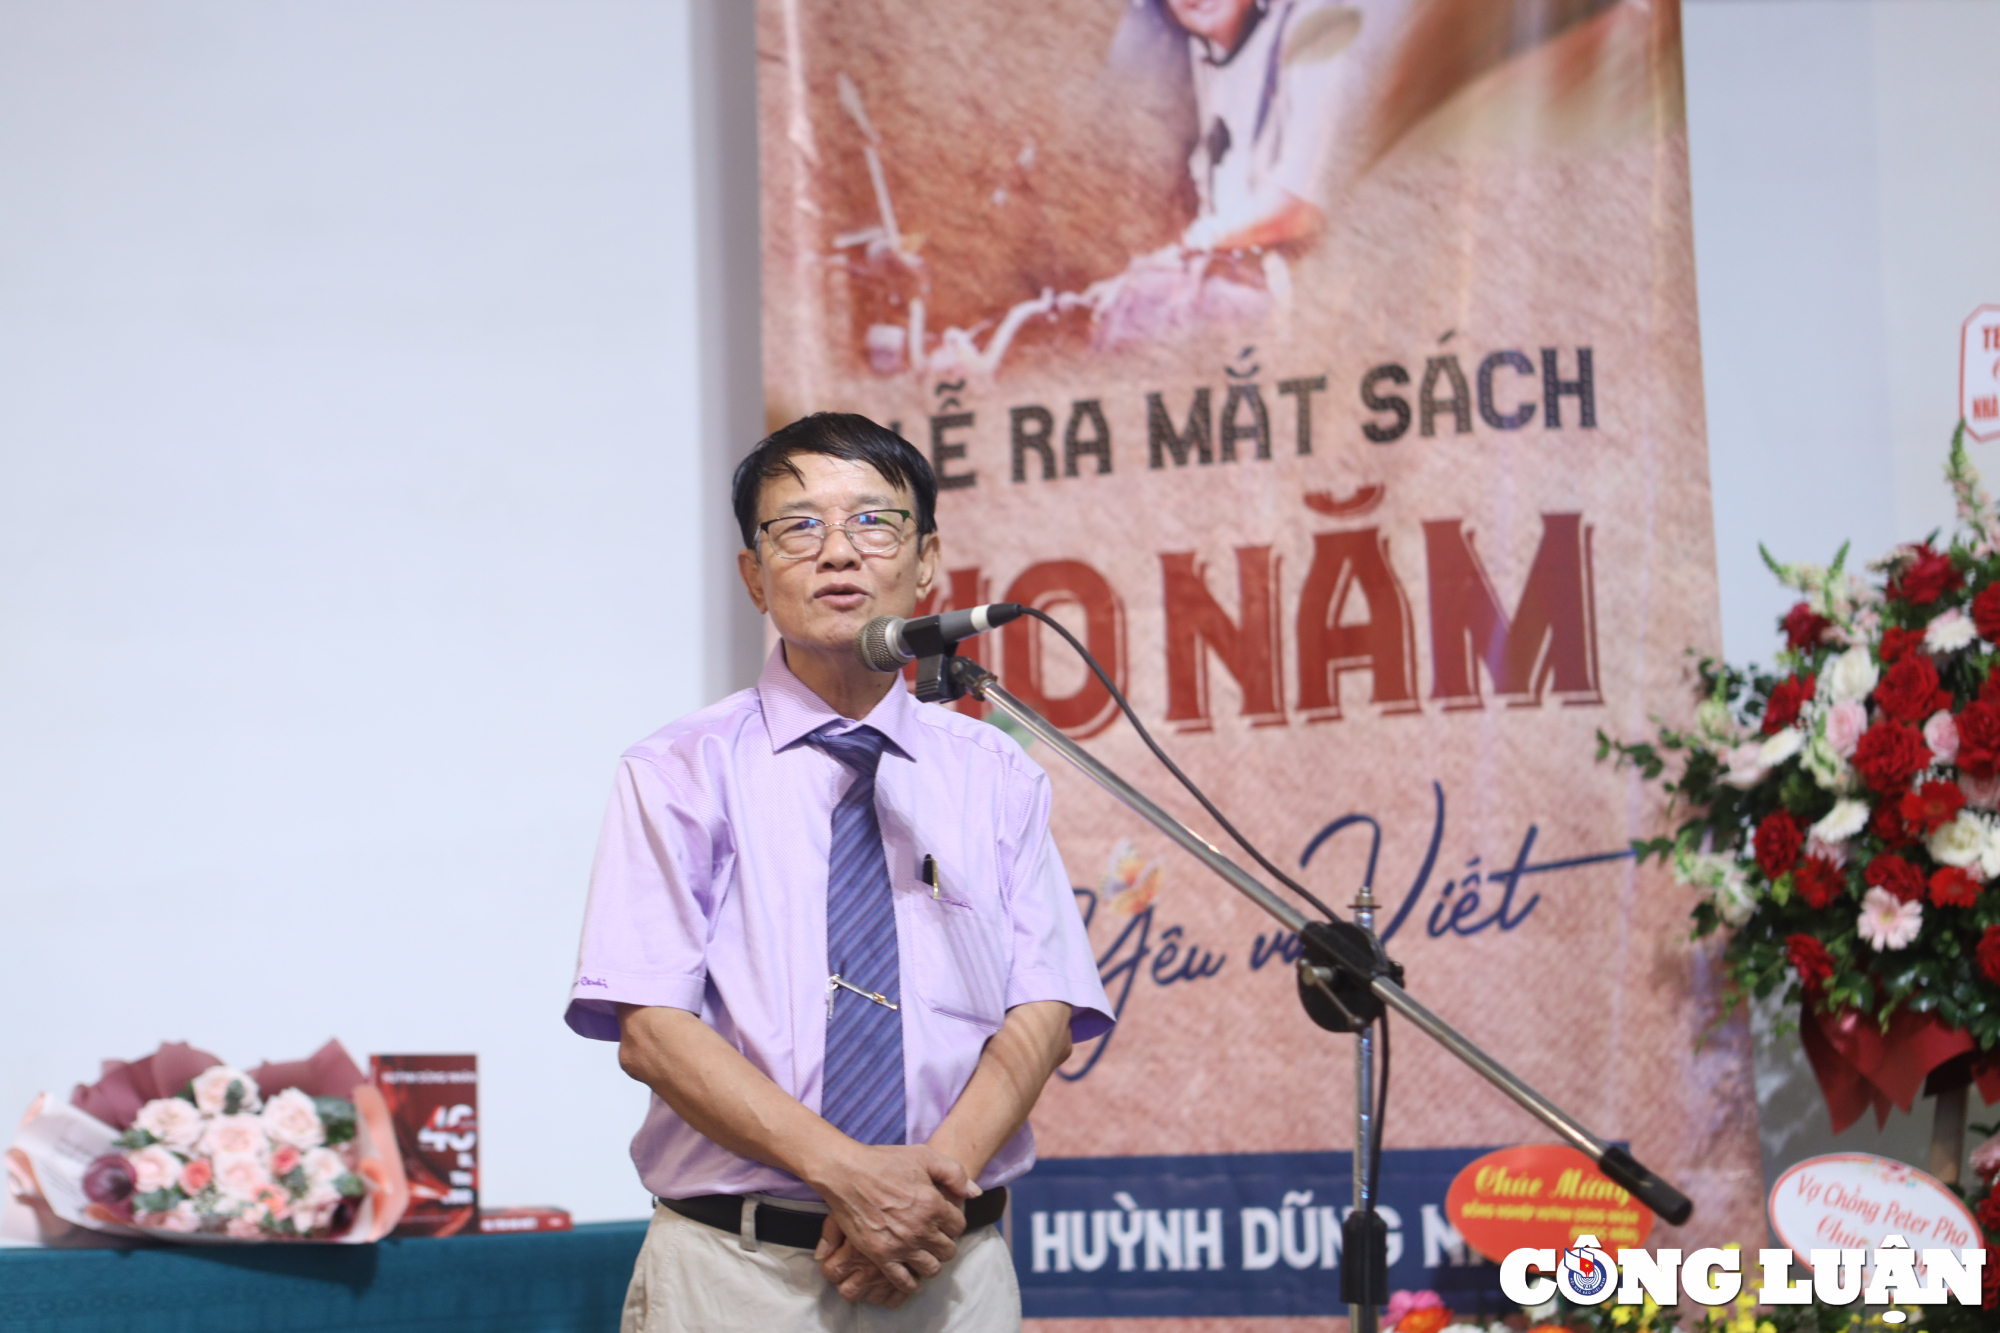 Nhà báo Huỳnh Dũng Nhân chia sẻ tại buổi ra mắt sách "40 năm Đi, Yêu và Viết" tại Bảo tàng Phụ nữ Việt Nam.